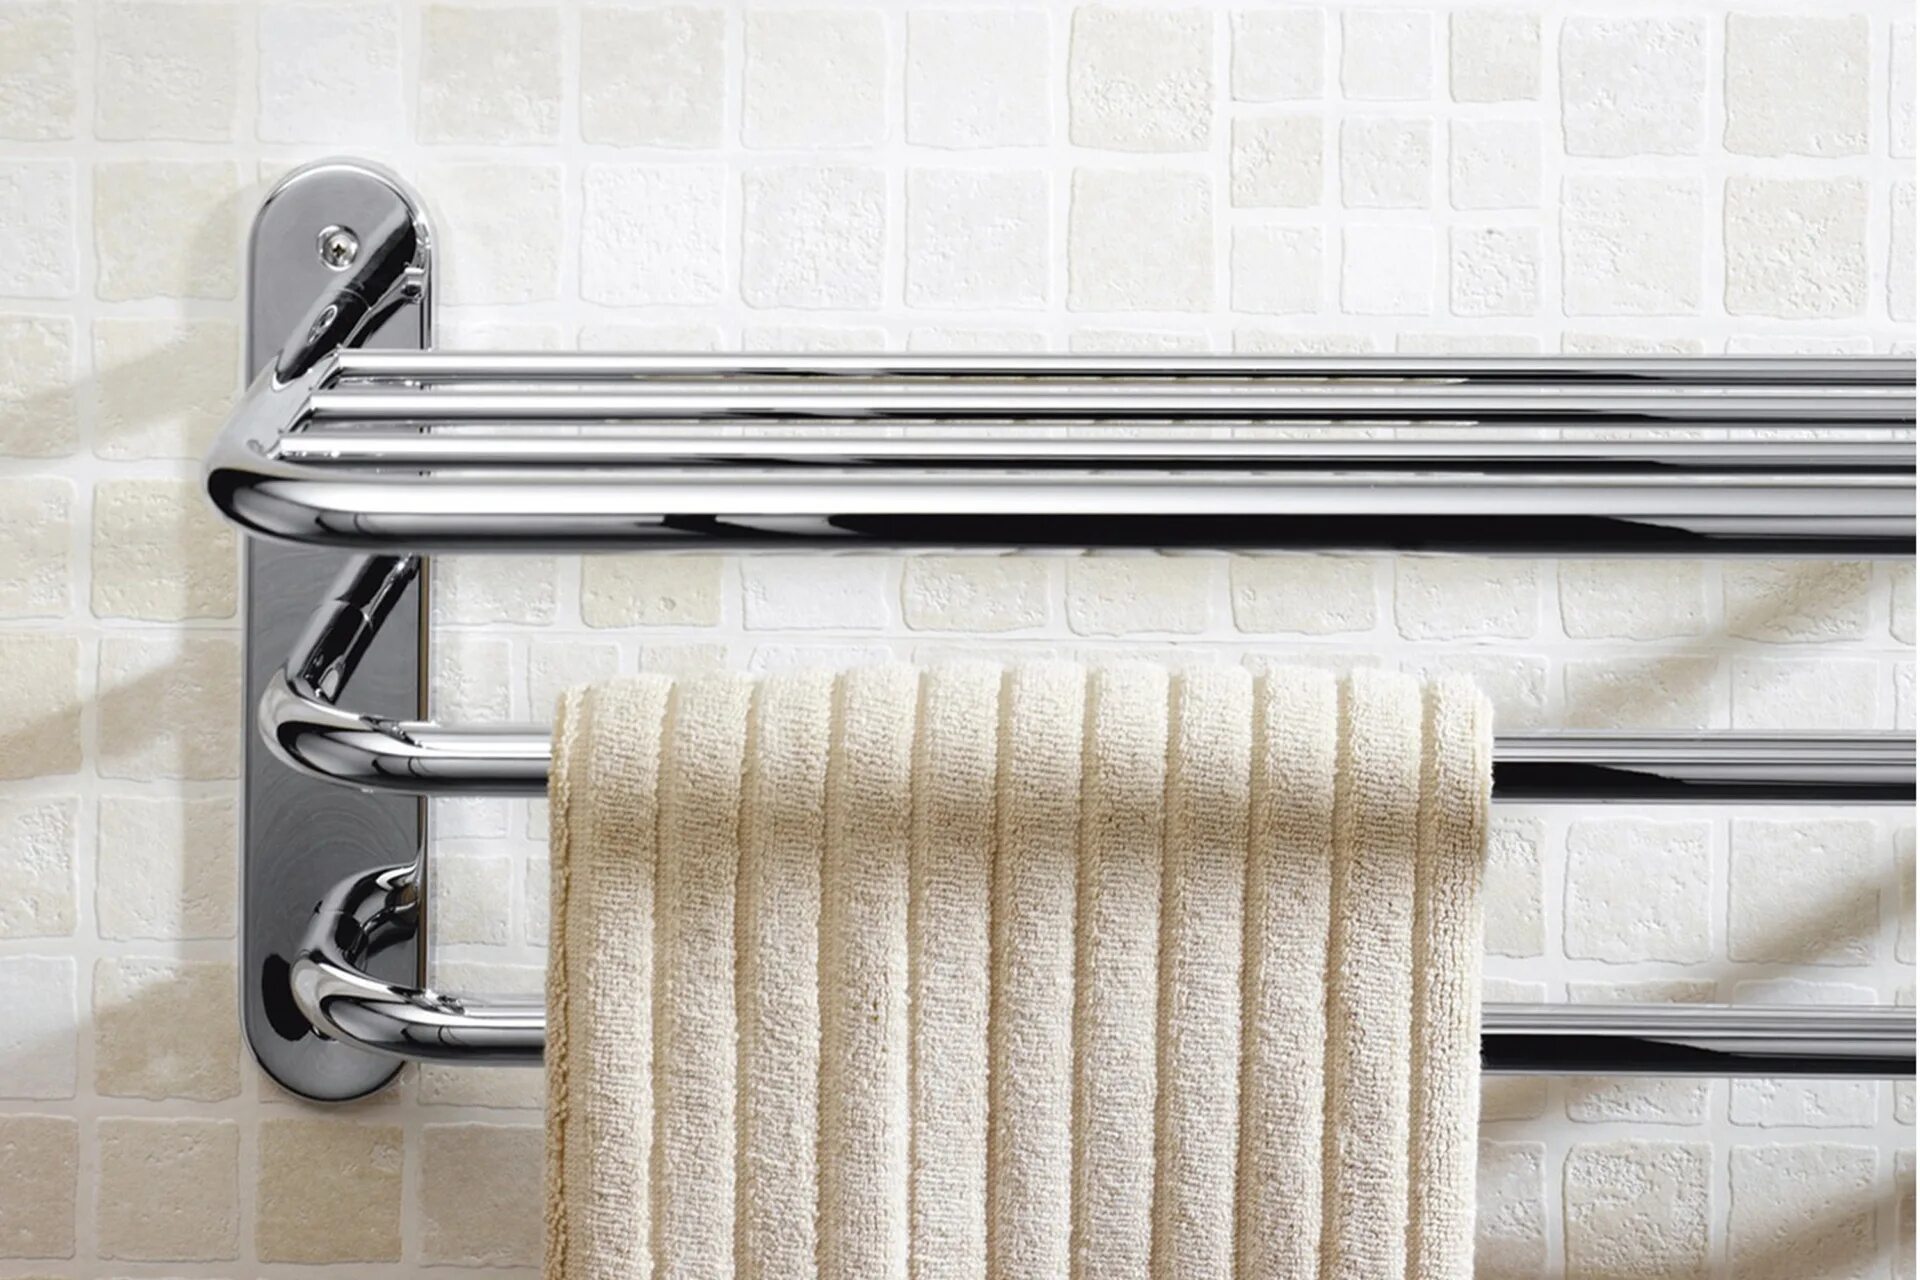 Штука для полотенец. YLT 0313а сушилка Towel Rack. Сушилка для белья Stainless Steel Towel Rack. Полотенце сушилка для ванны. Держатель для полотенец в ванну.